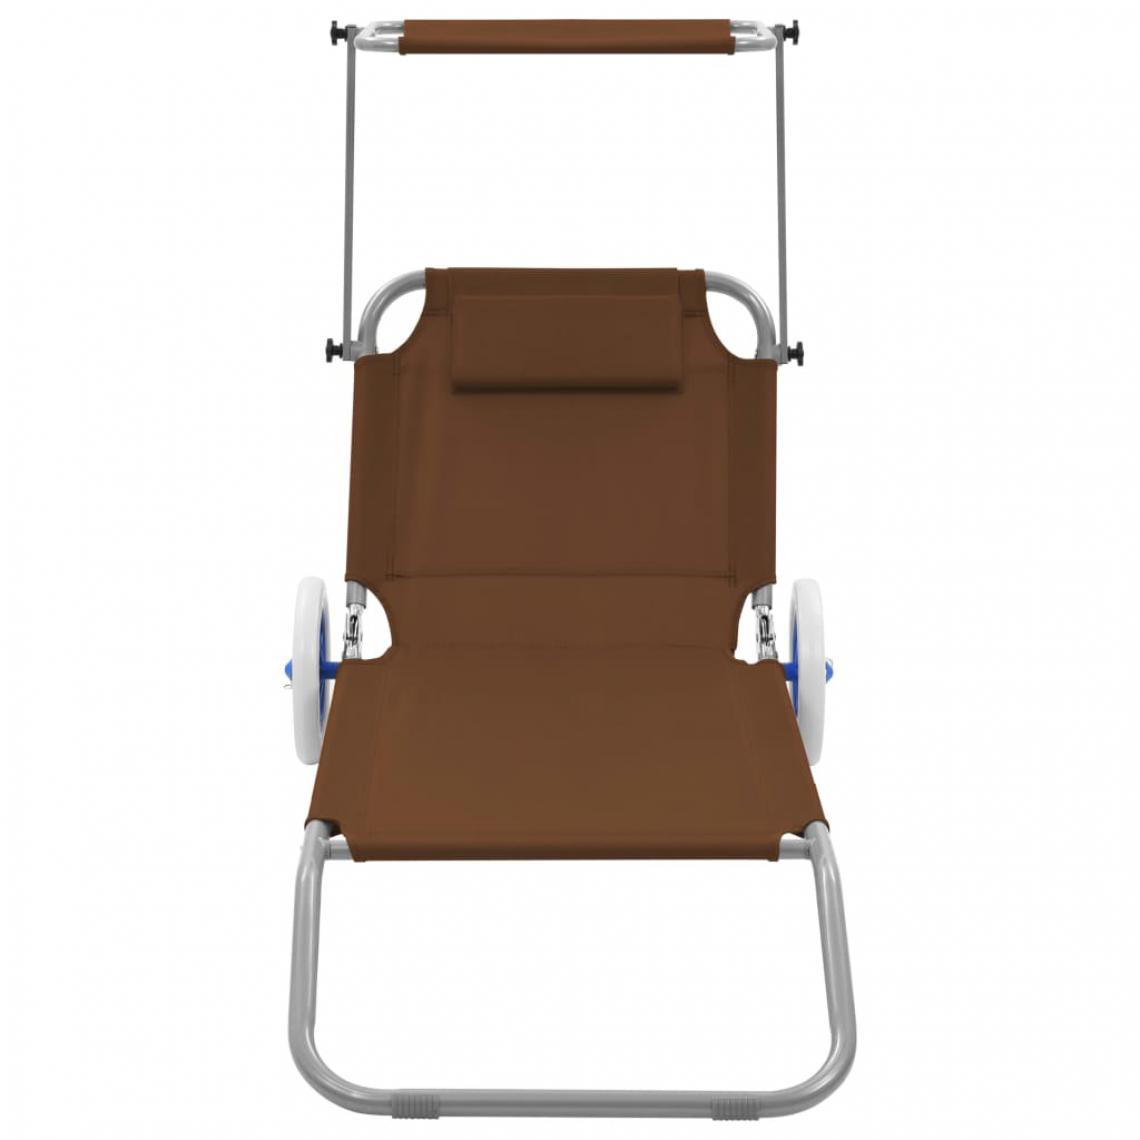 Icaverne - Icaverne - Bains de soleil reference Chaise longue pliable avec auvent et roues Acier Taupe - Transats, chaises longues